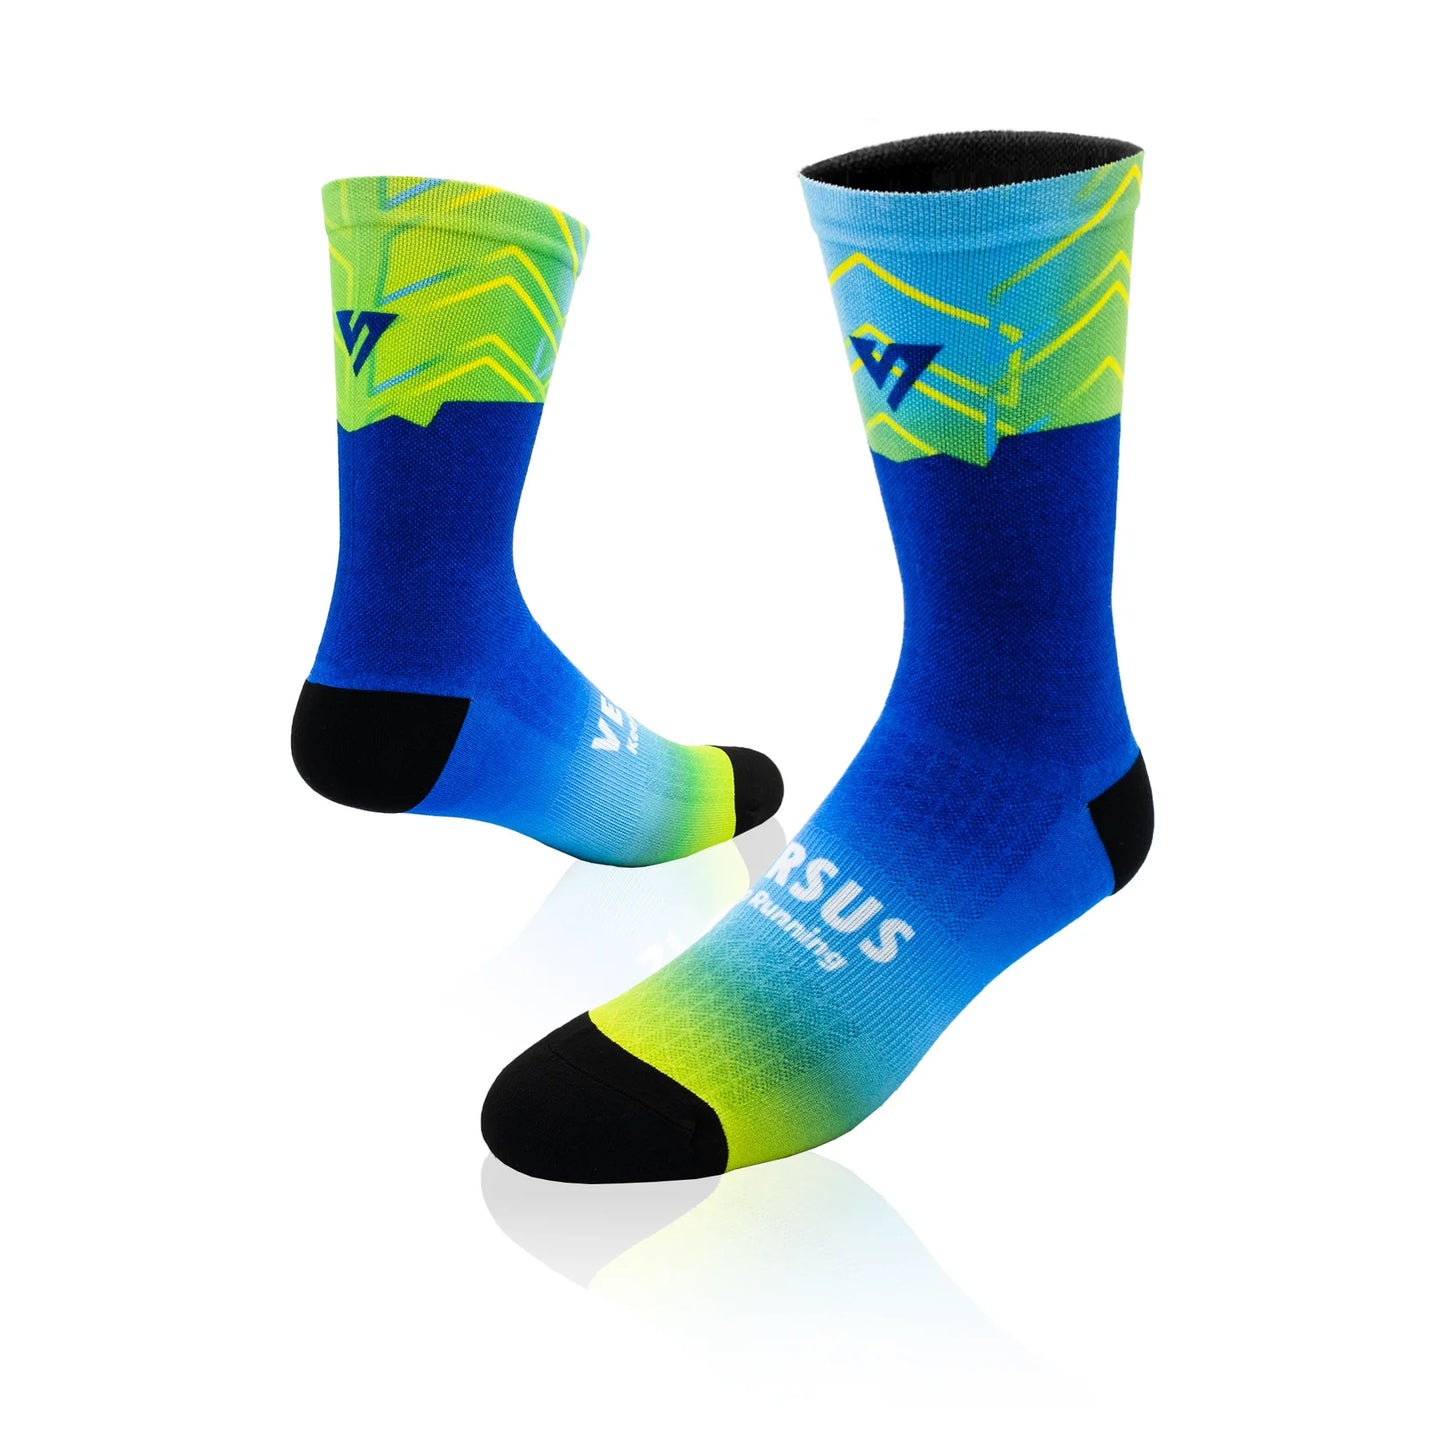 Versus - Table Mountain Runner Elite Socks